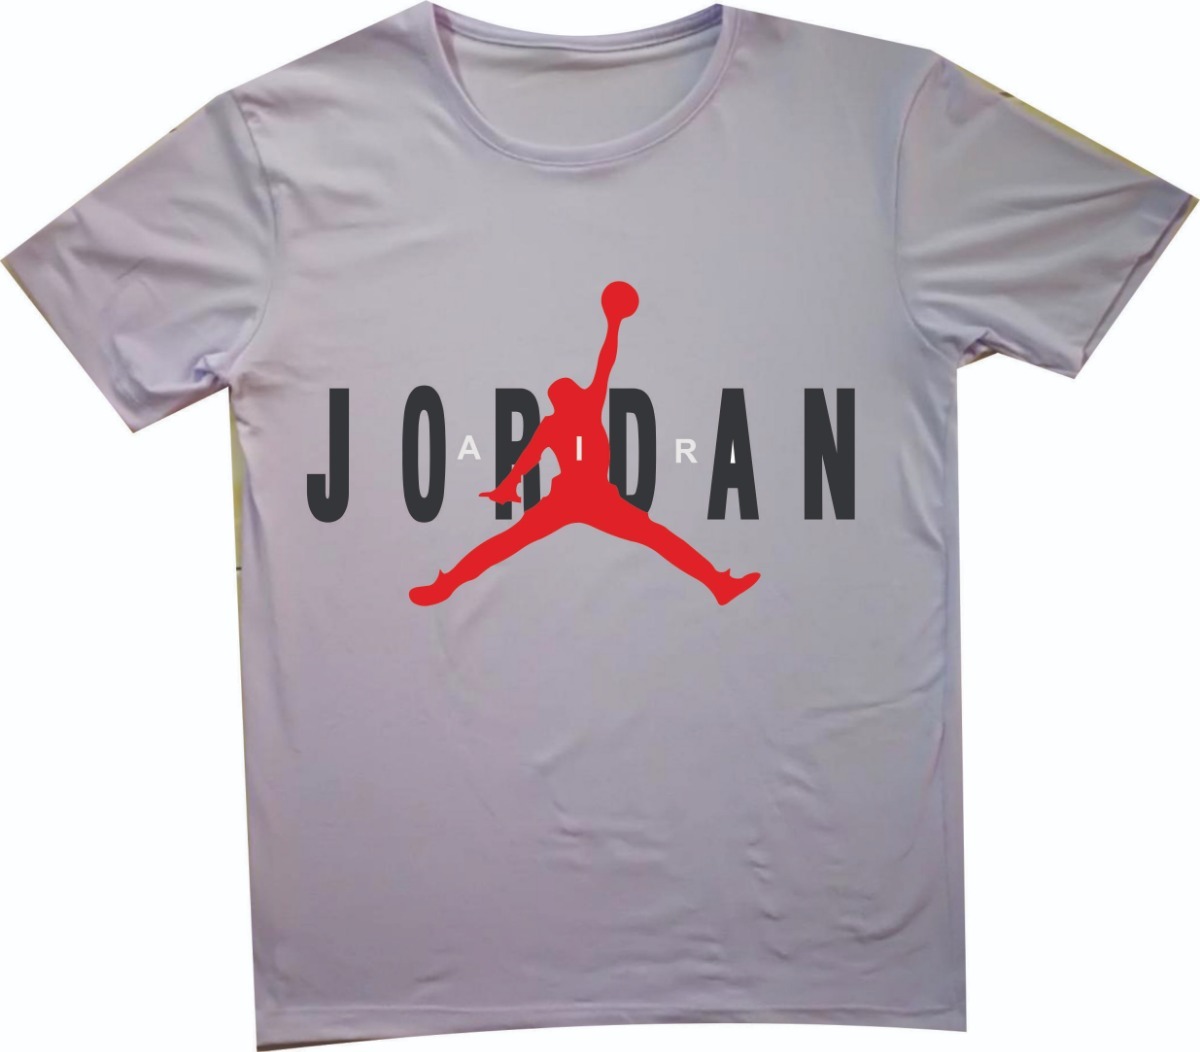 camiseta jordan mujer